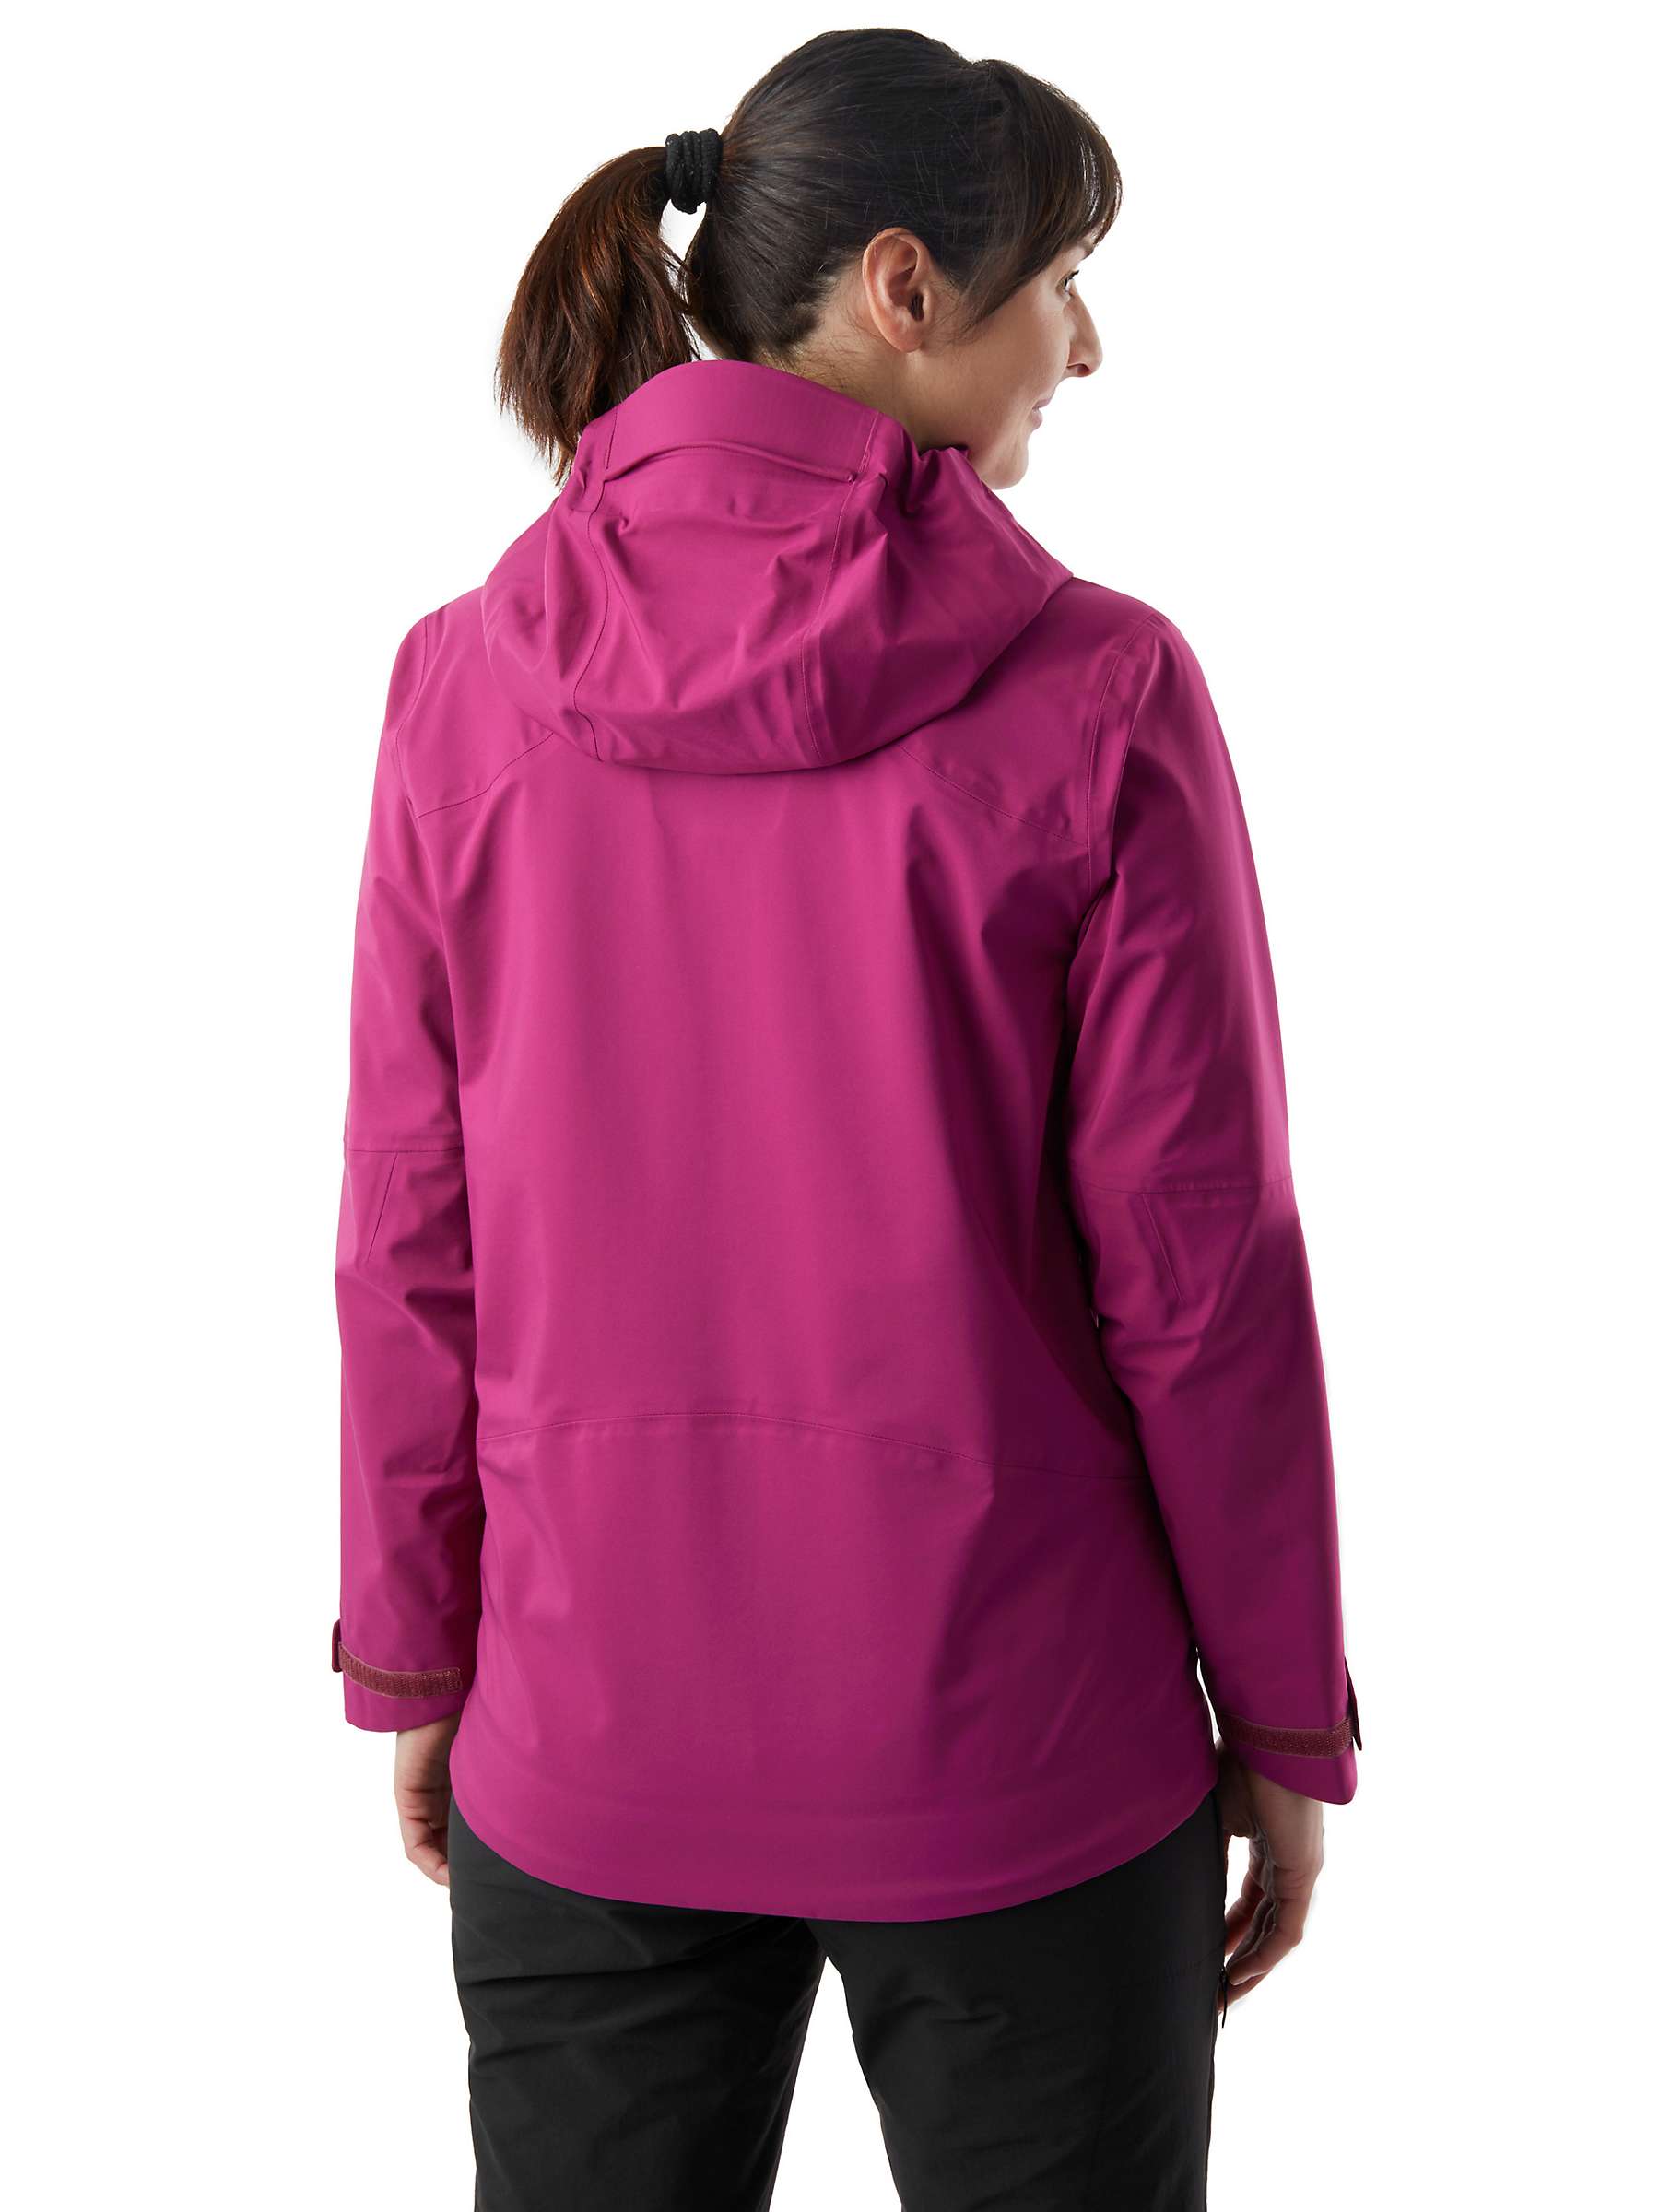 Buy Rohan Ventus Waterproof Jacket, Raspberry Pink Online at johnlewis.com